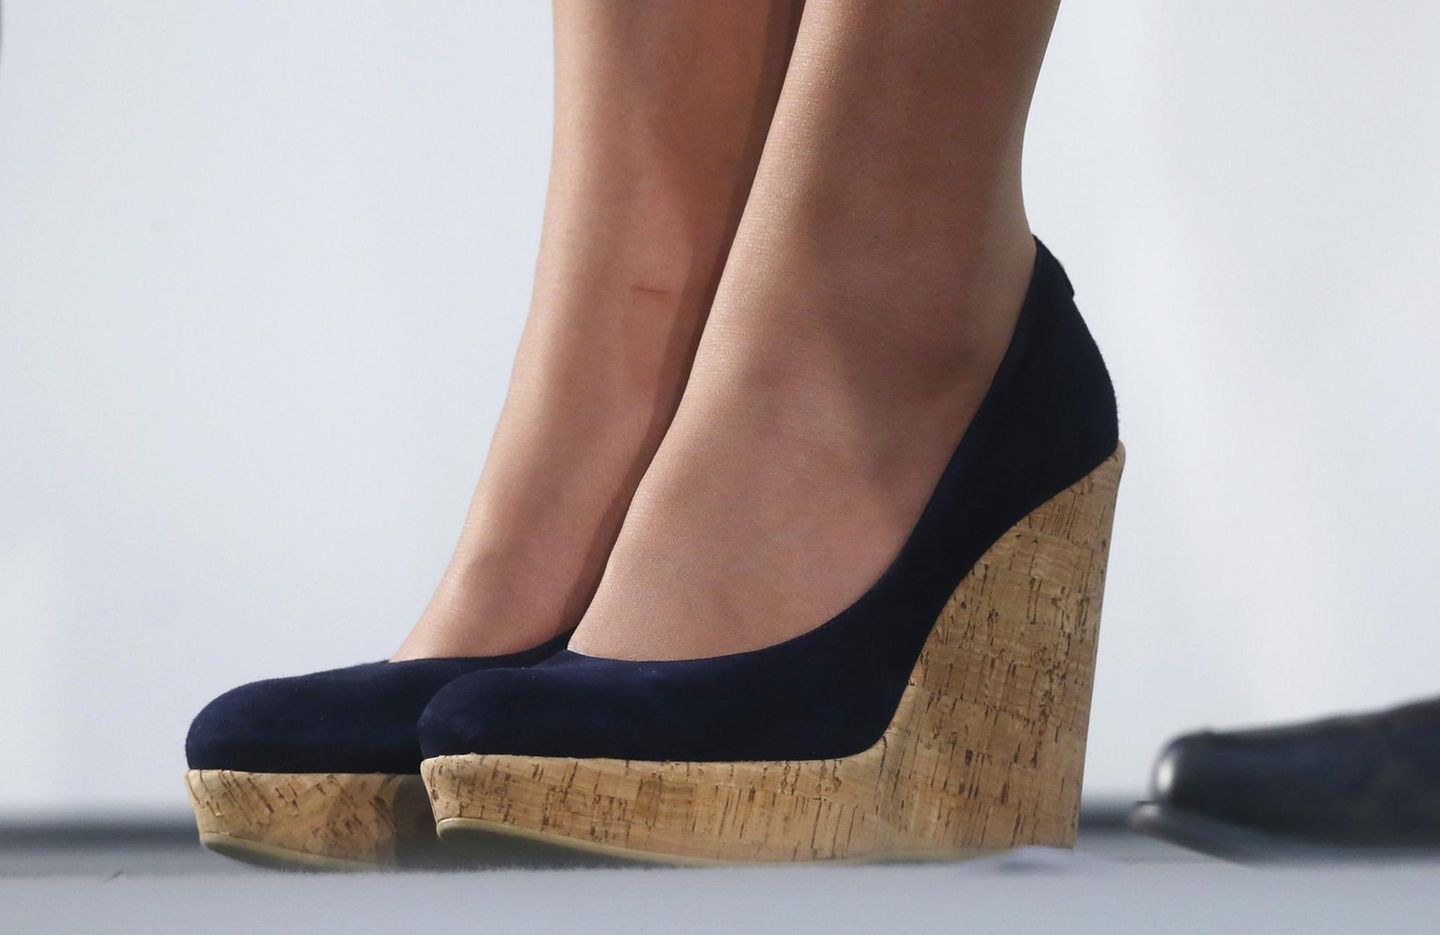 Schuhe der Royals: Schuhe von Herzogin Kate im Detail